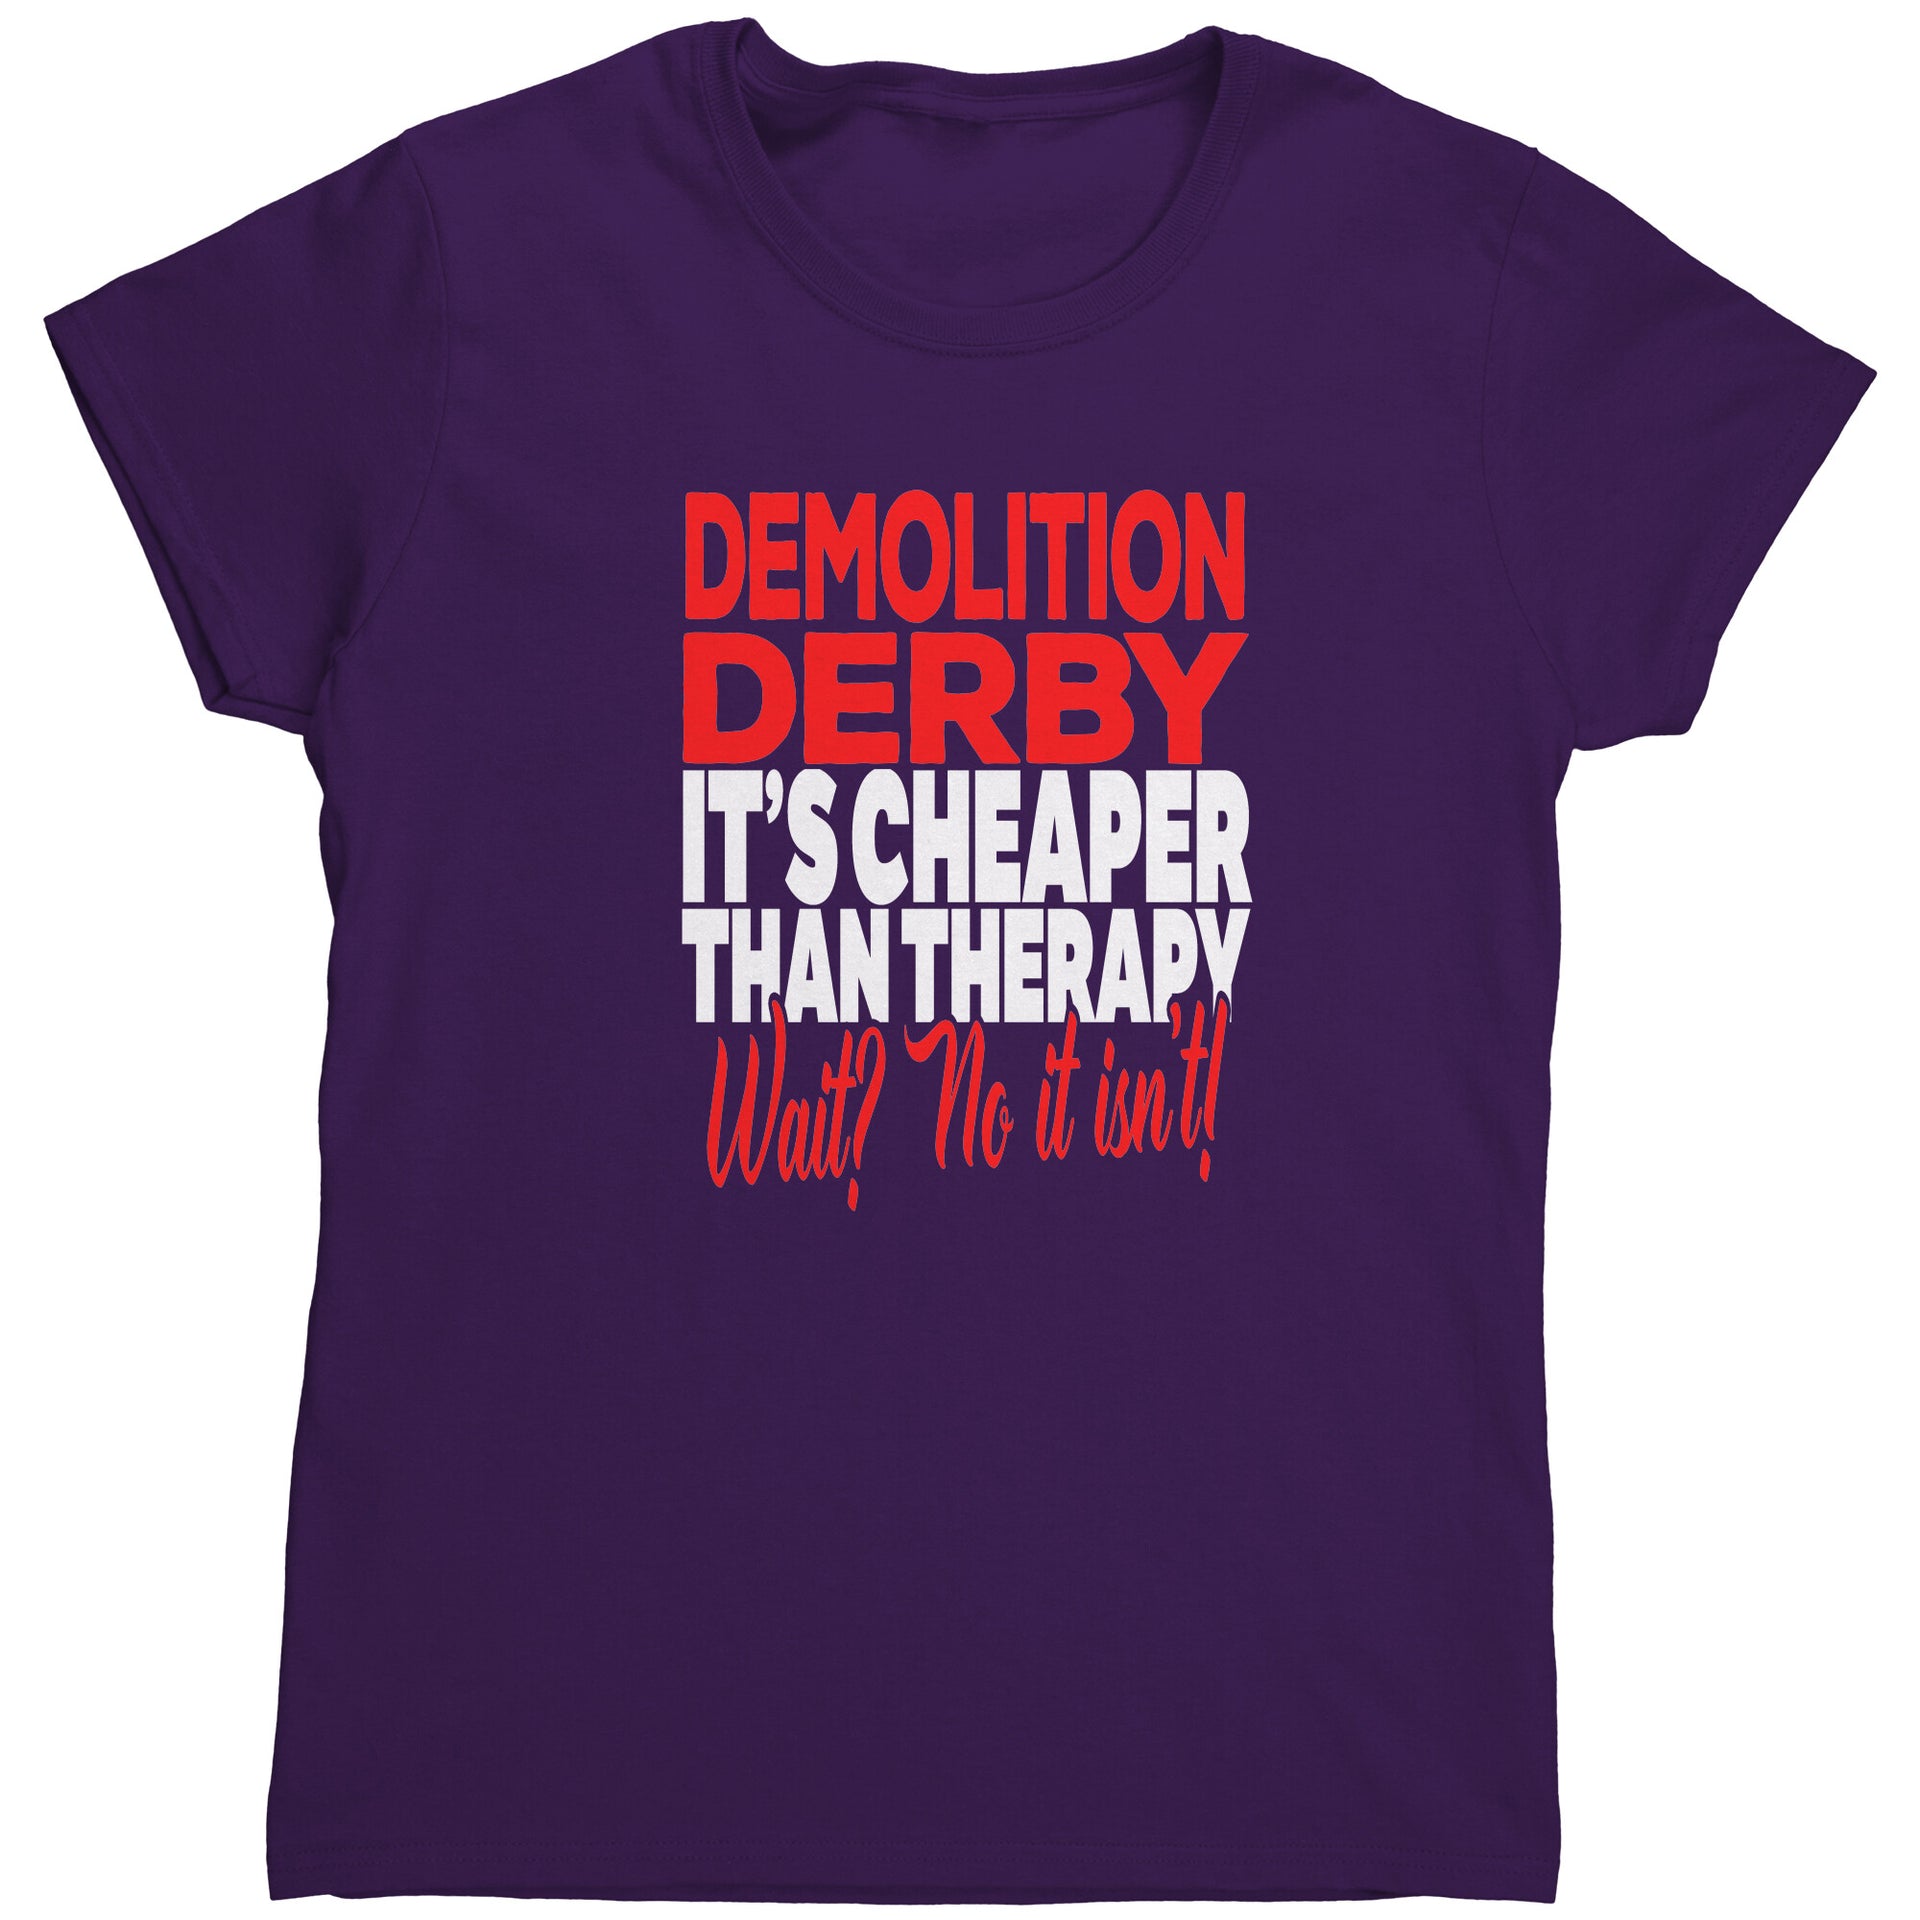 demolition derby t-shirts